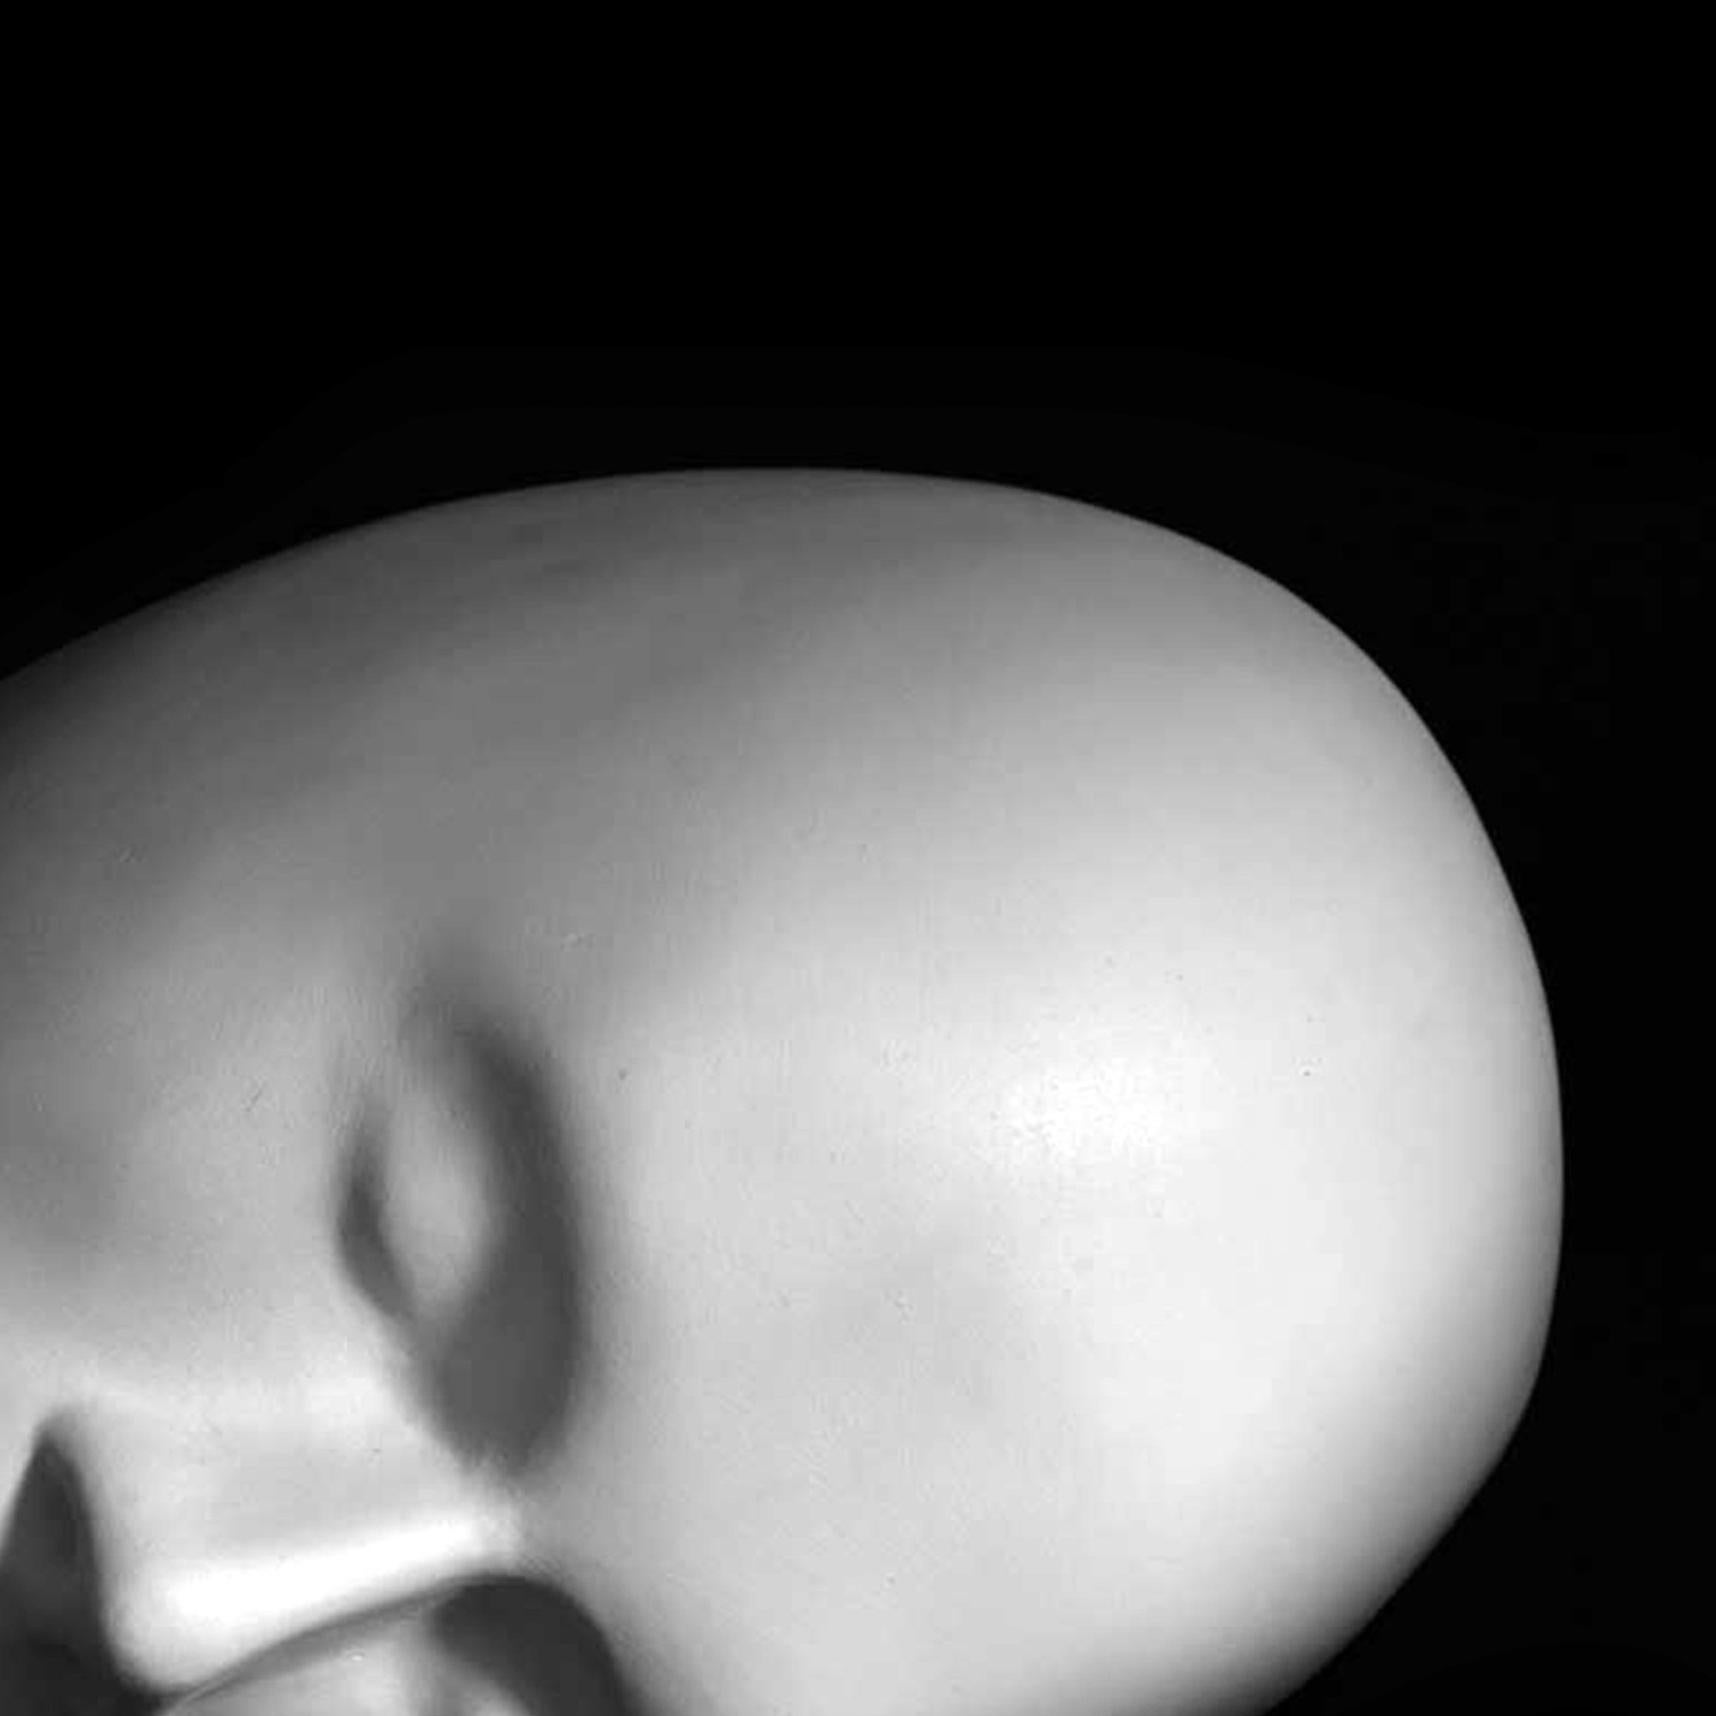 Les sculptures contemporaines de Dale Dunning utilisent souvent l'image générique de la tête humaine comme métaphore de notre expérience collective. Avec cette pièce de table en bronze, l'artiste canadien a forgé à la main une tête ovale sur le